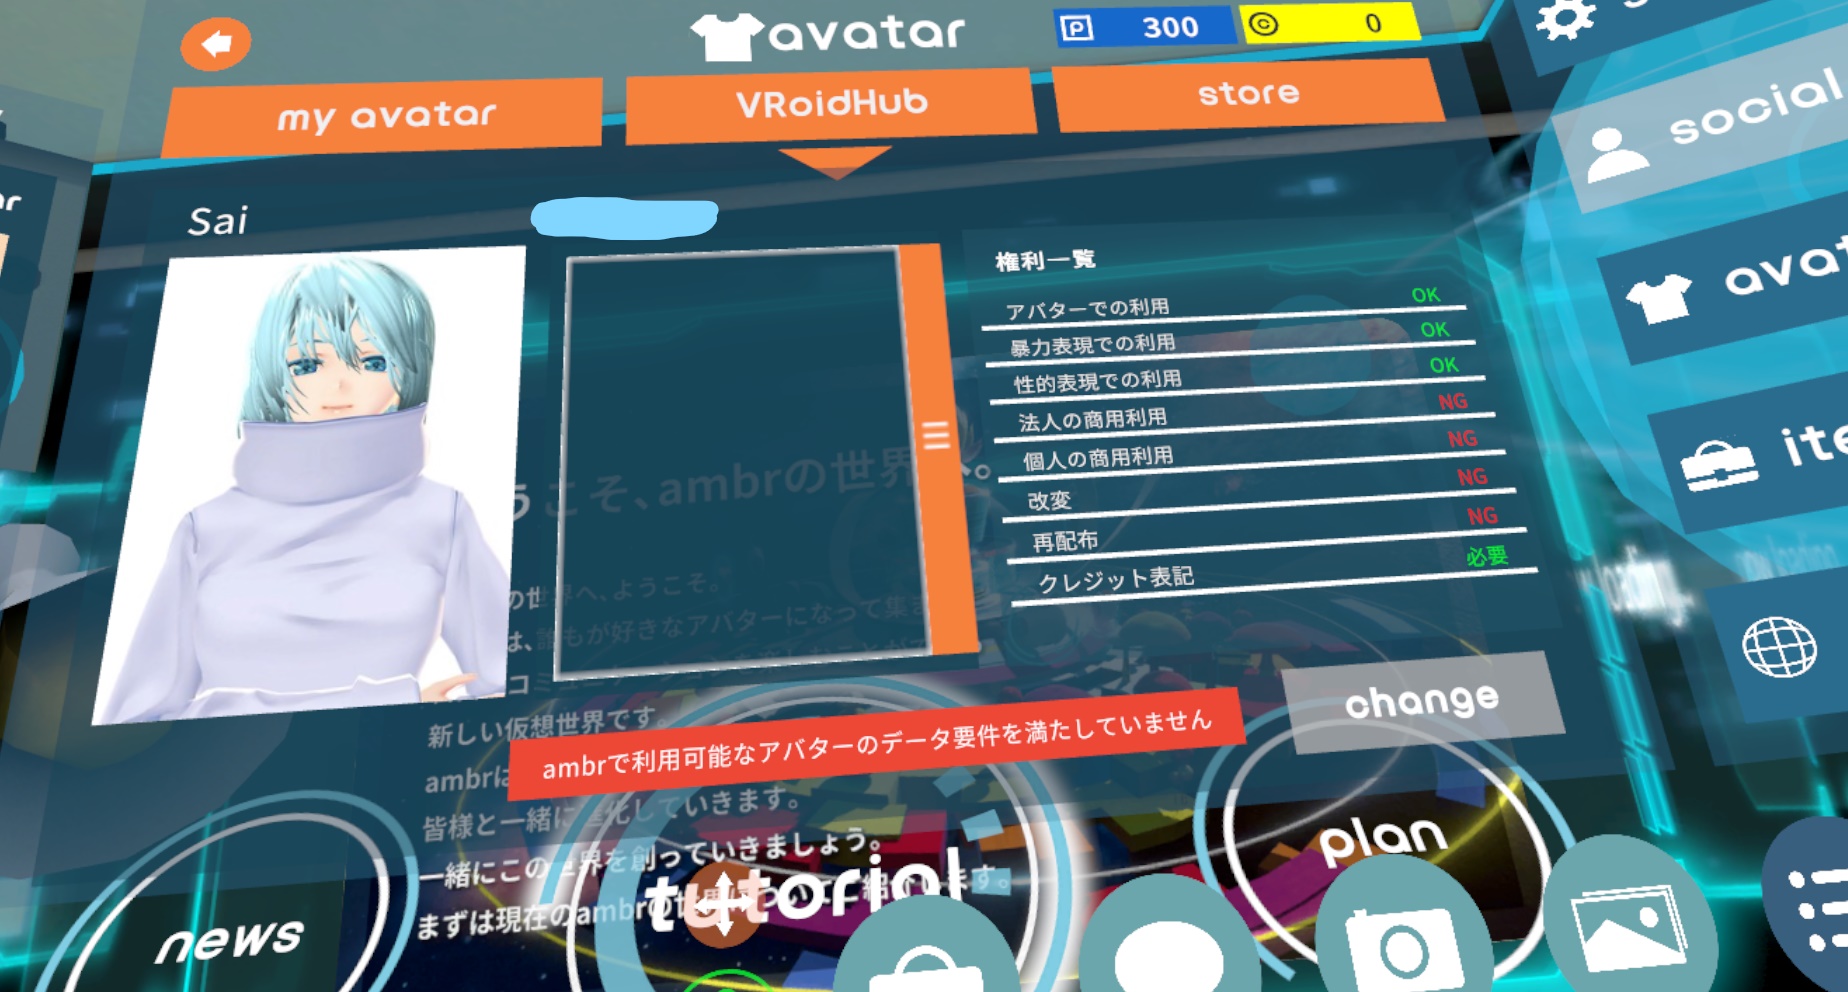 VR SNS【ambr】のアバター制限